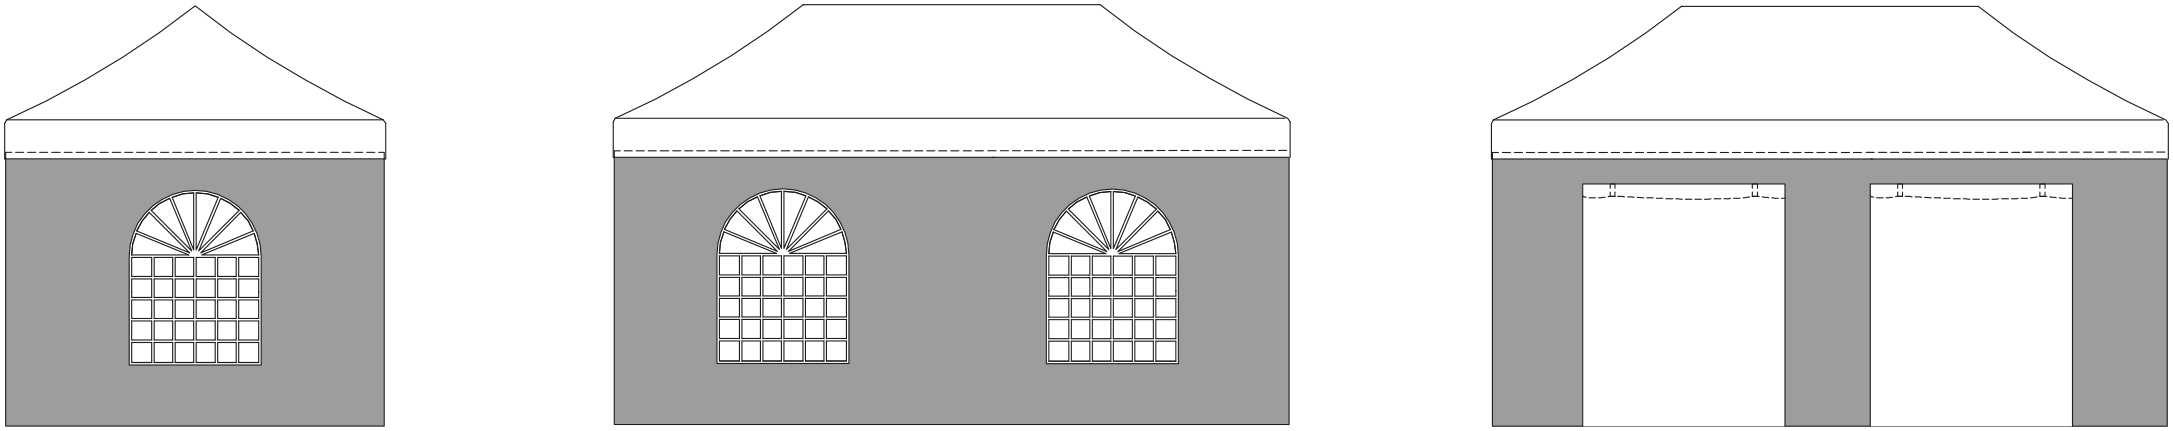 Kit 4 Parois Murs latéraux pour tente 3x6m / 3 cotés fenêtres rondes + 1 porte / BLANC